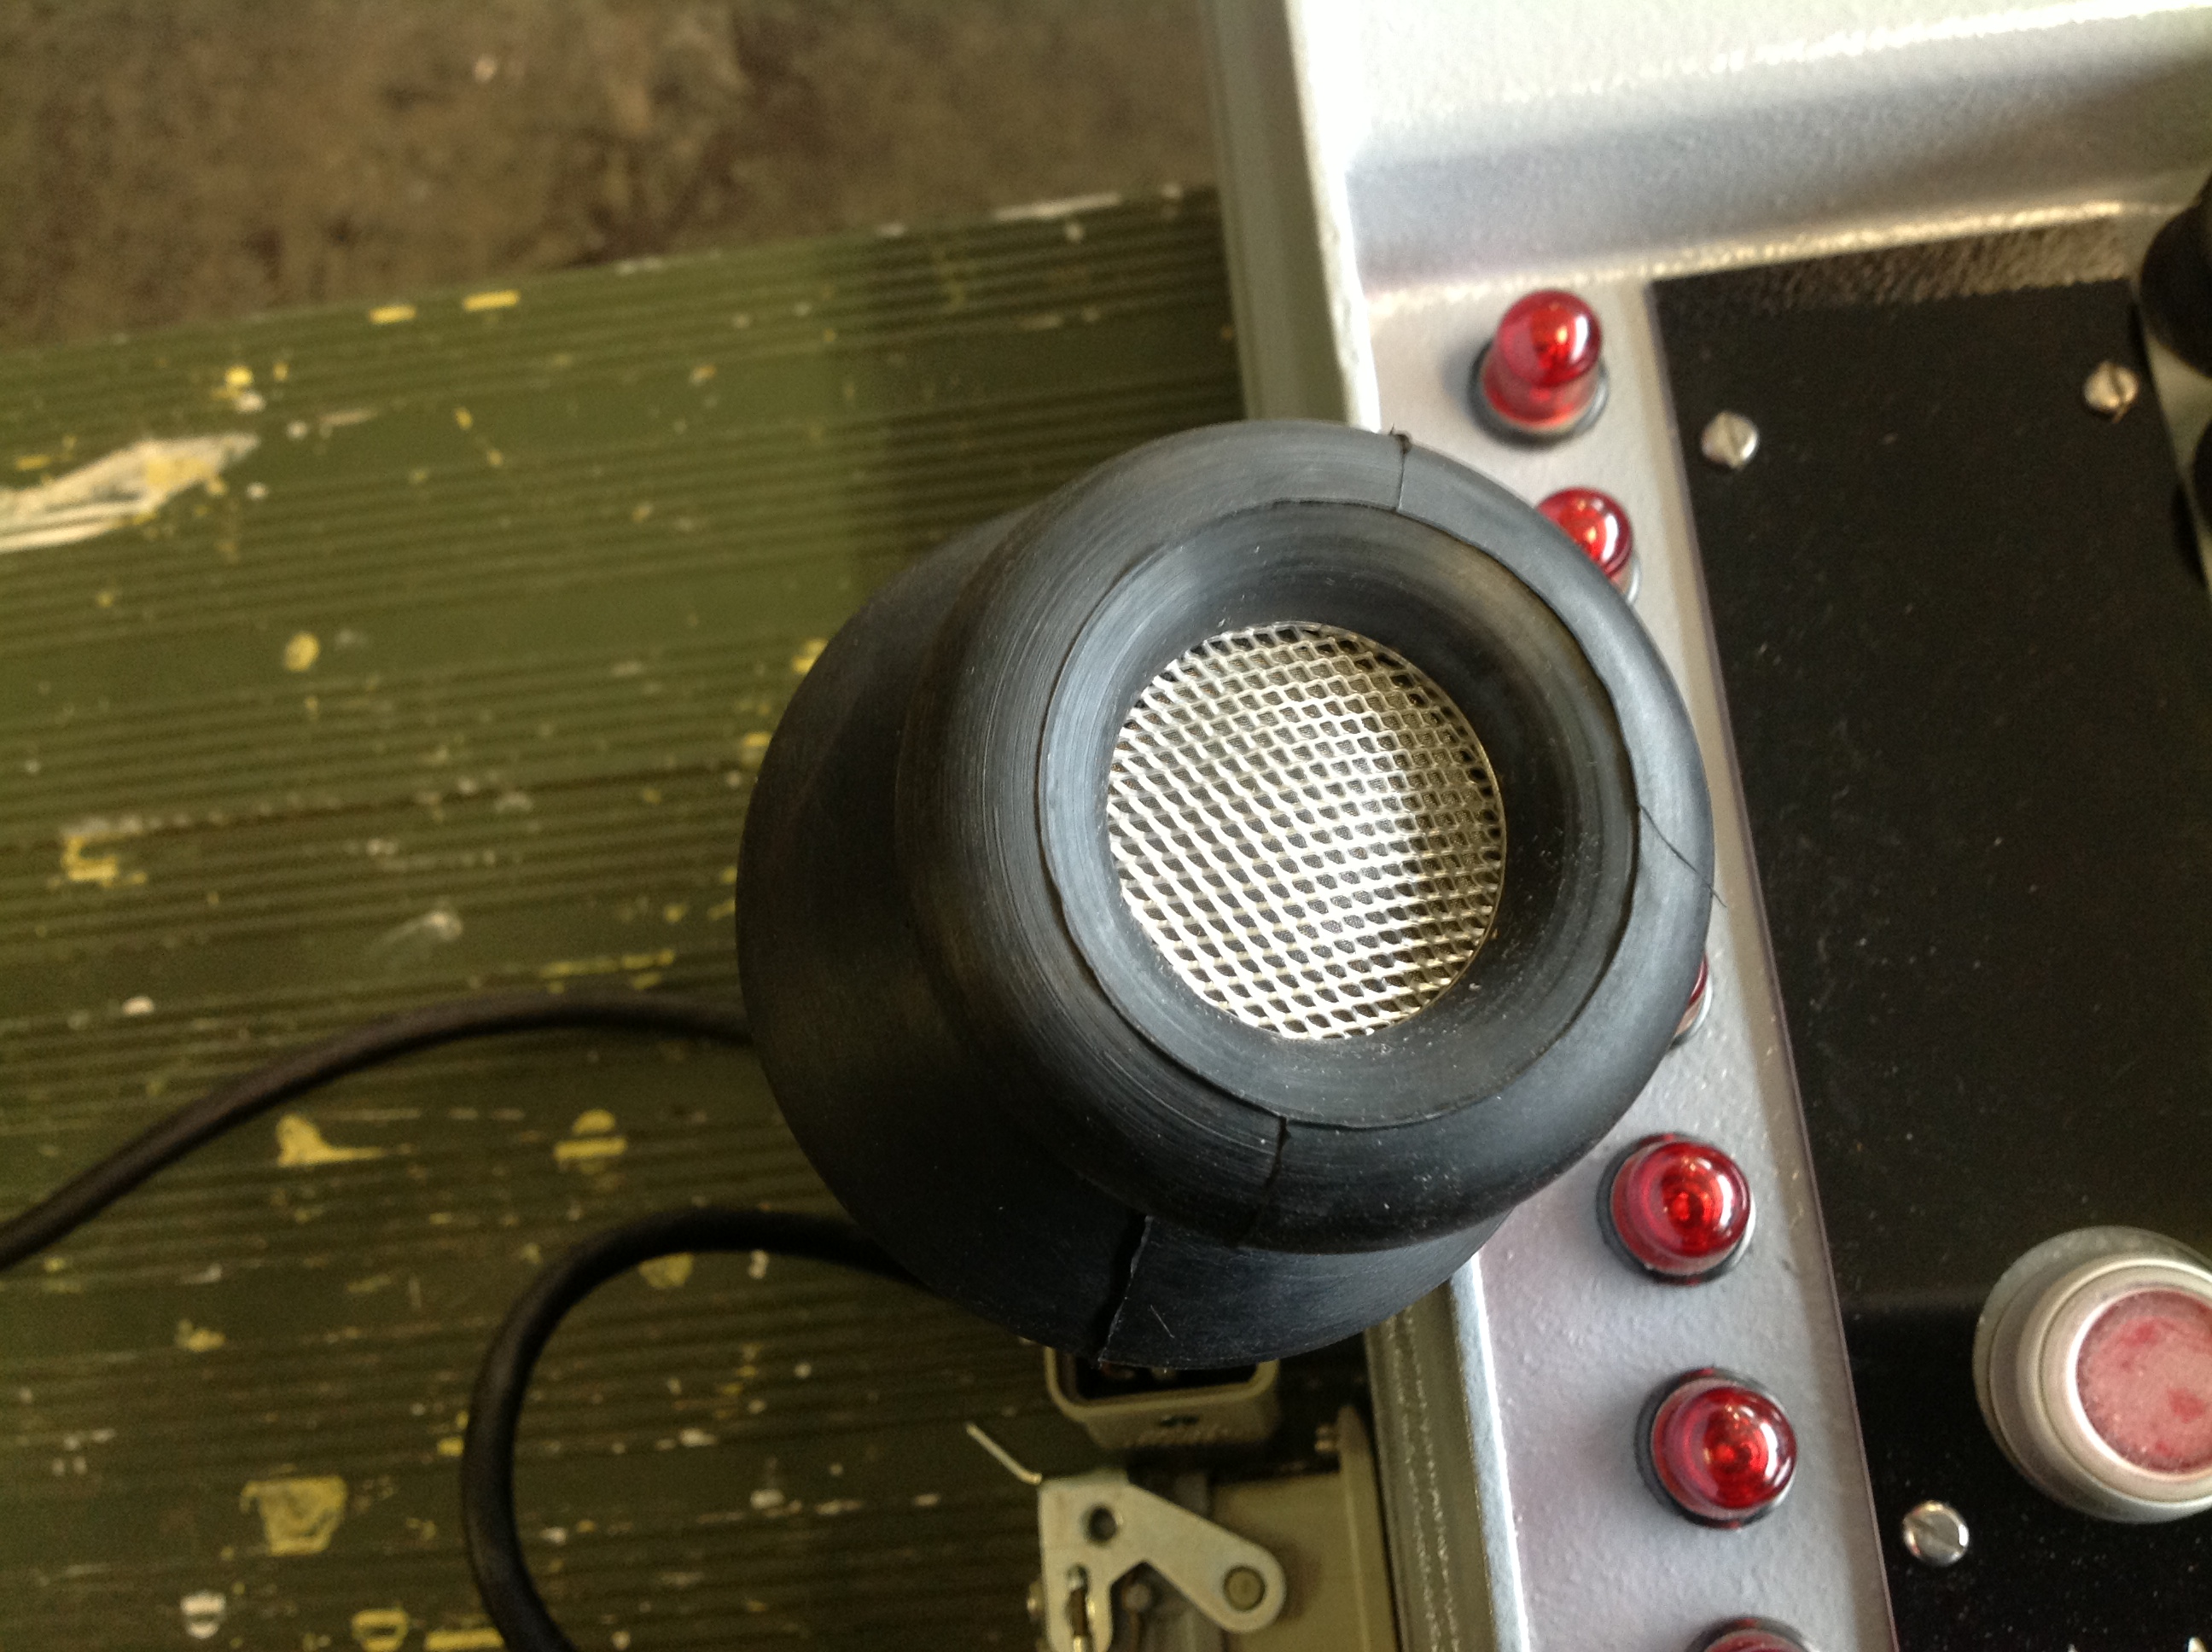 Schiffs-Lautsprecheranlage Typ G18000, Eigenverständigungsanlage, SLA-Zentrale